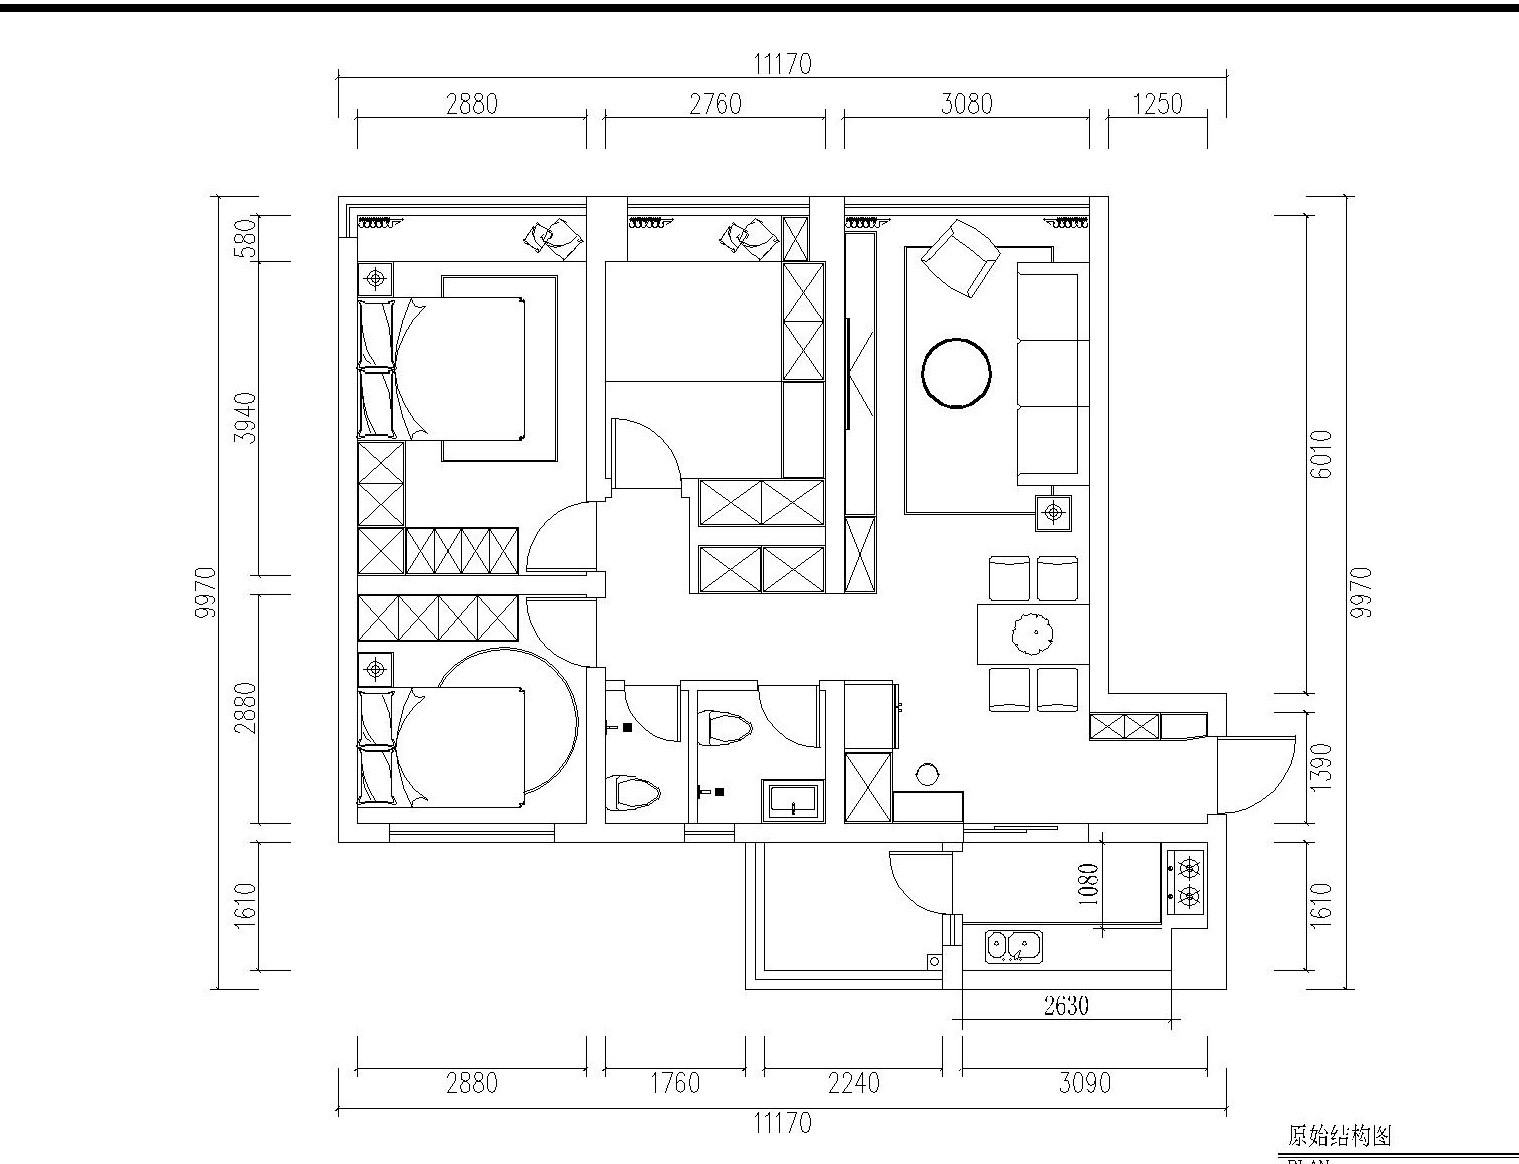 95现代三房装修效果图,西宸原著-三世同堂装修案例效果图-美广网(图1)